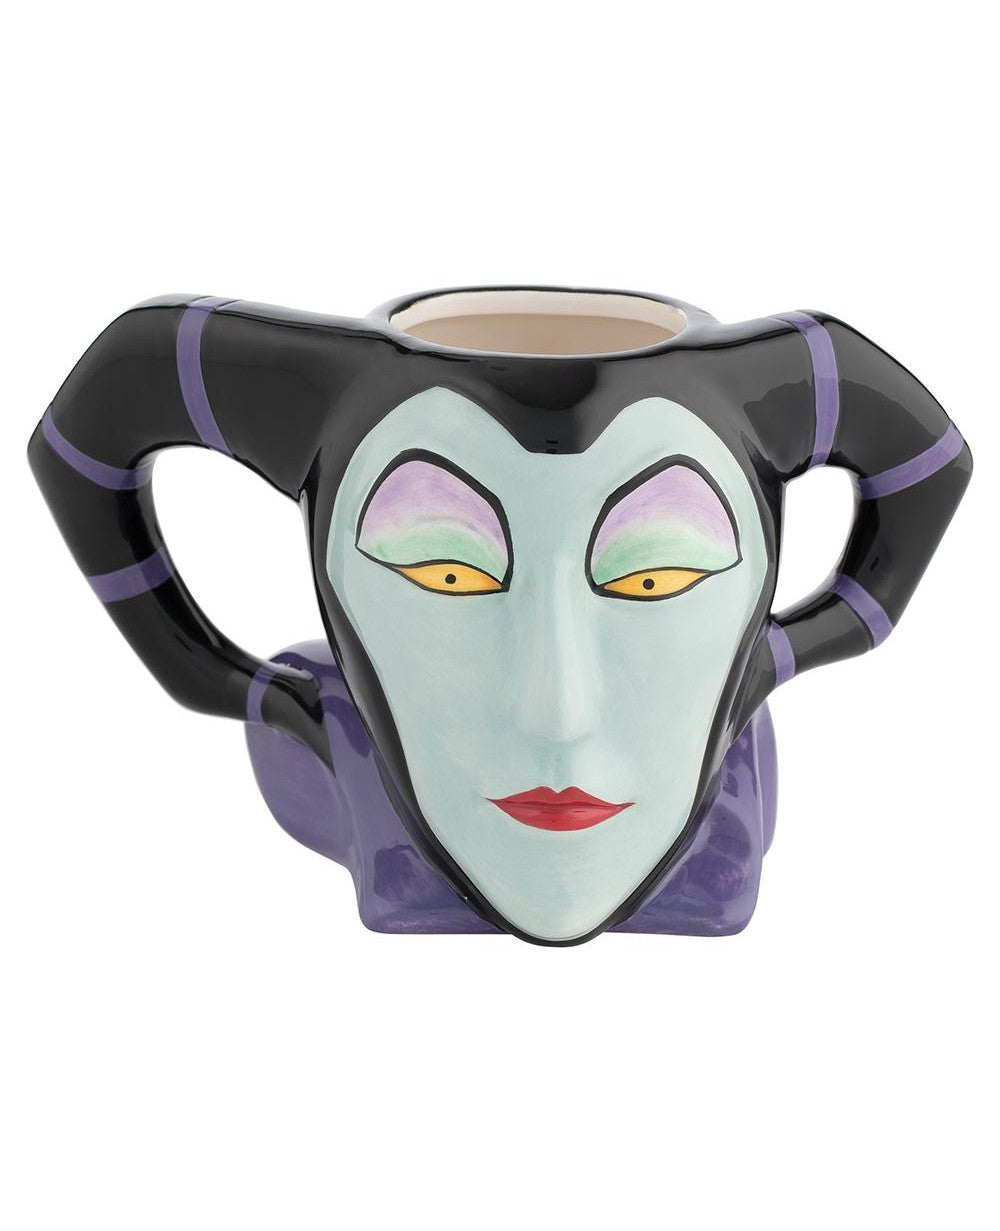 Disney Villains Maleficent Ceramic Mug